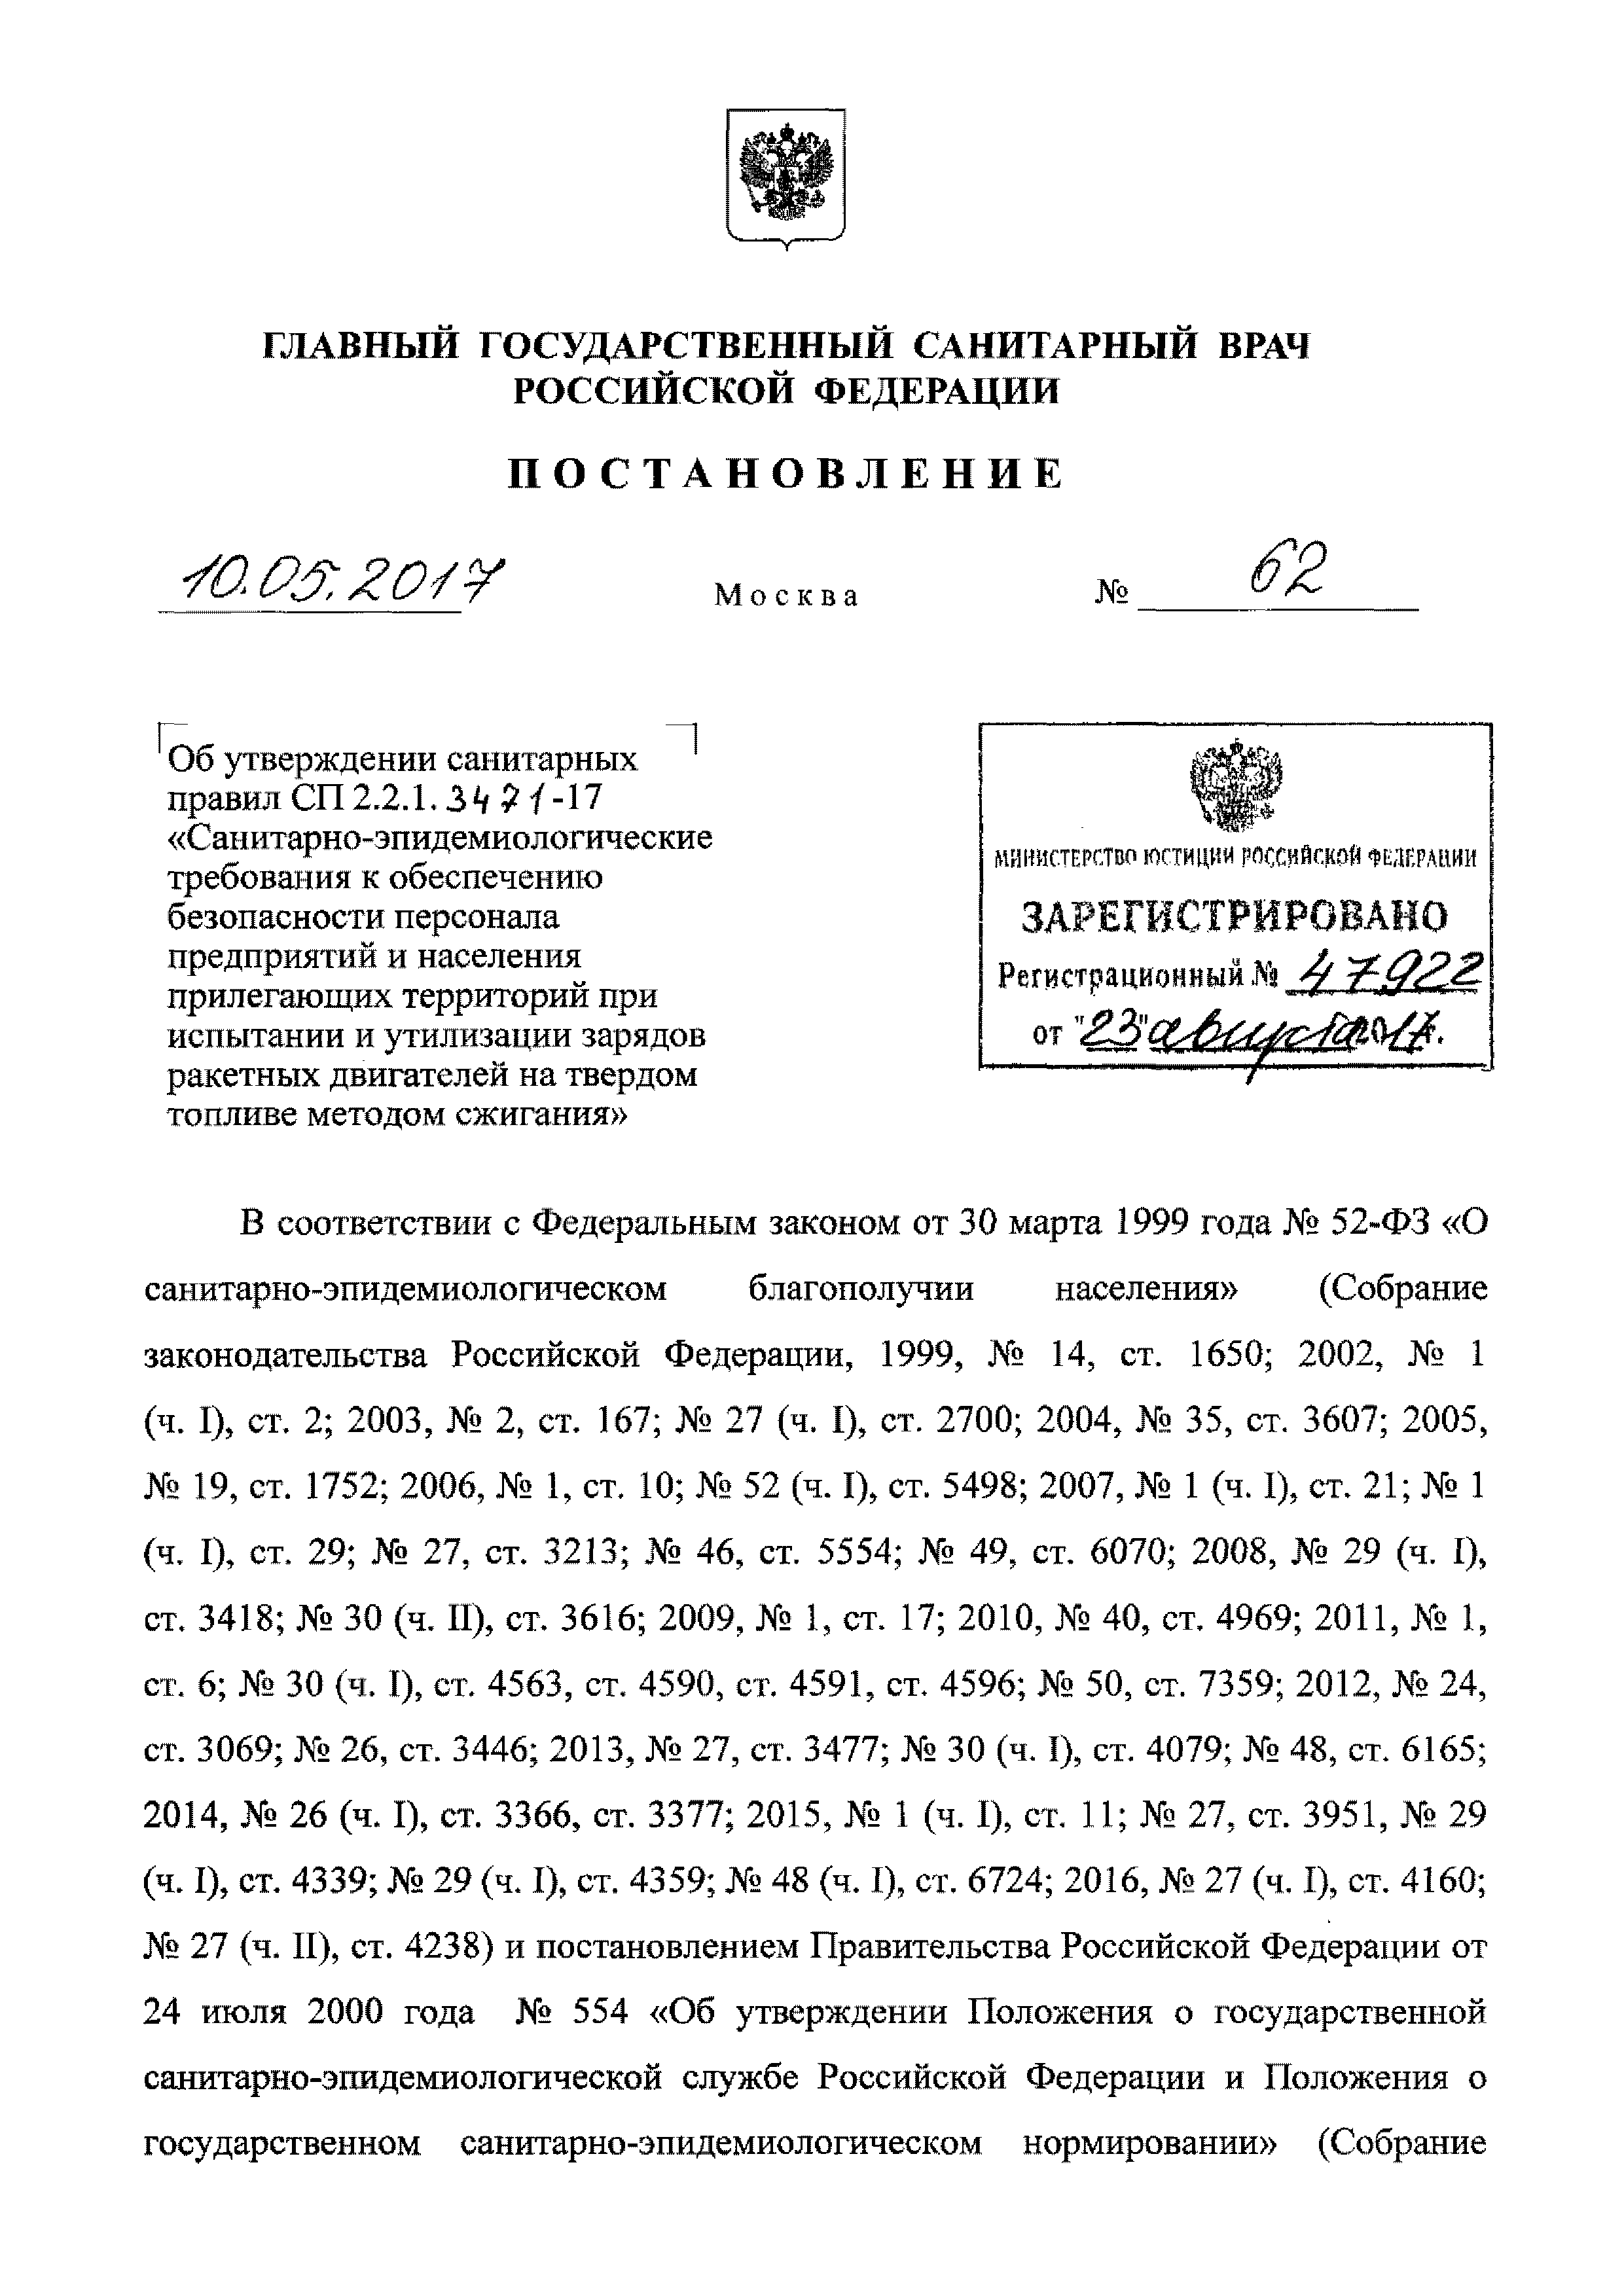 СП 2.2.1.3471-17